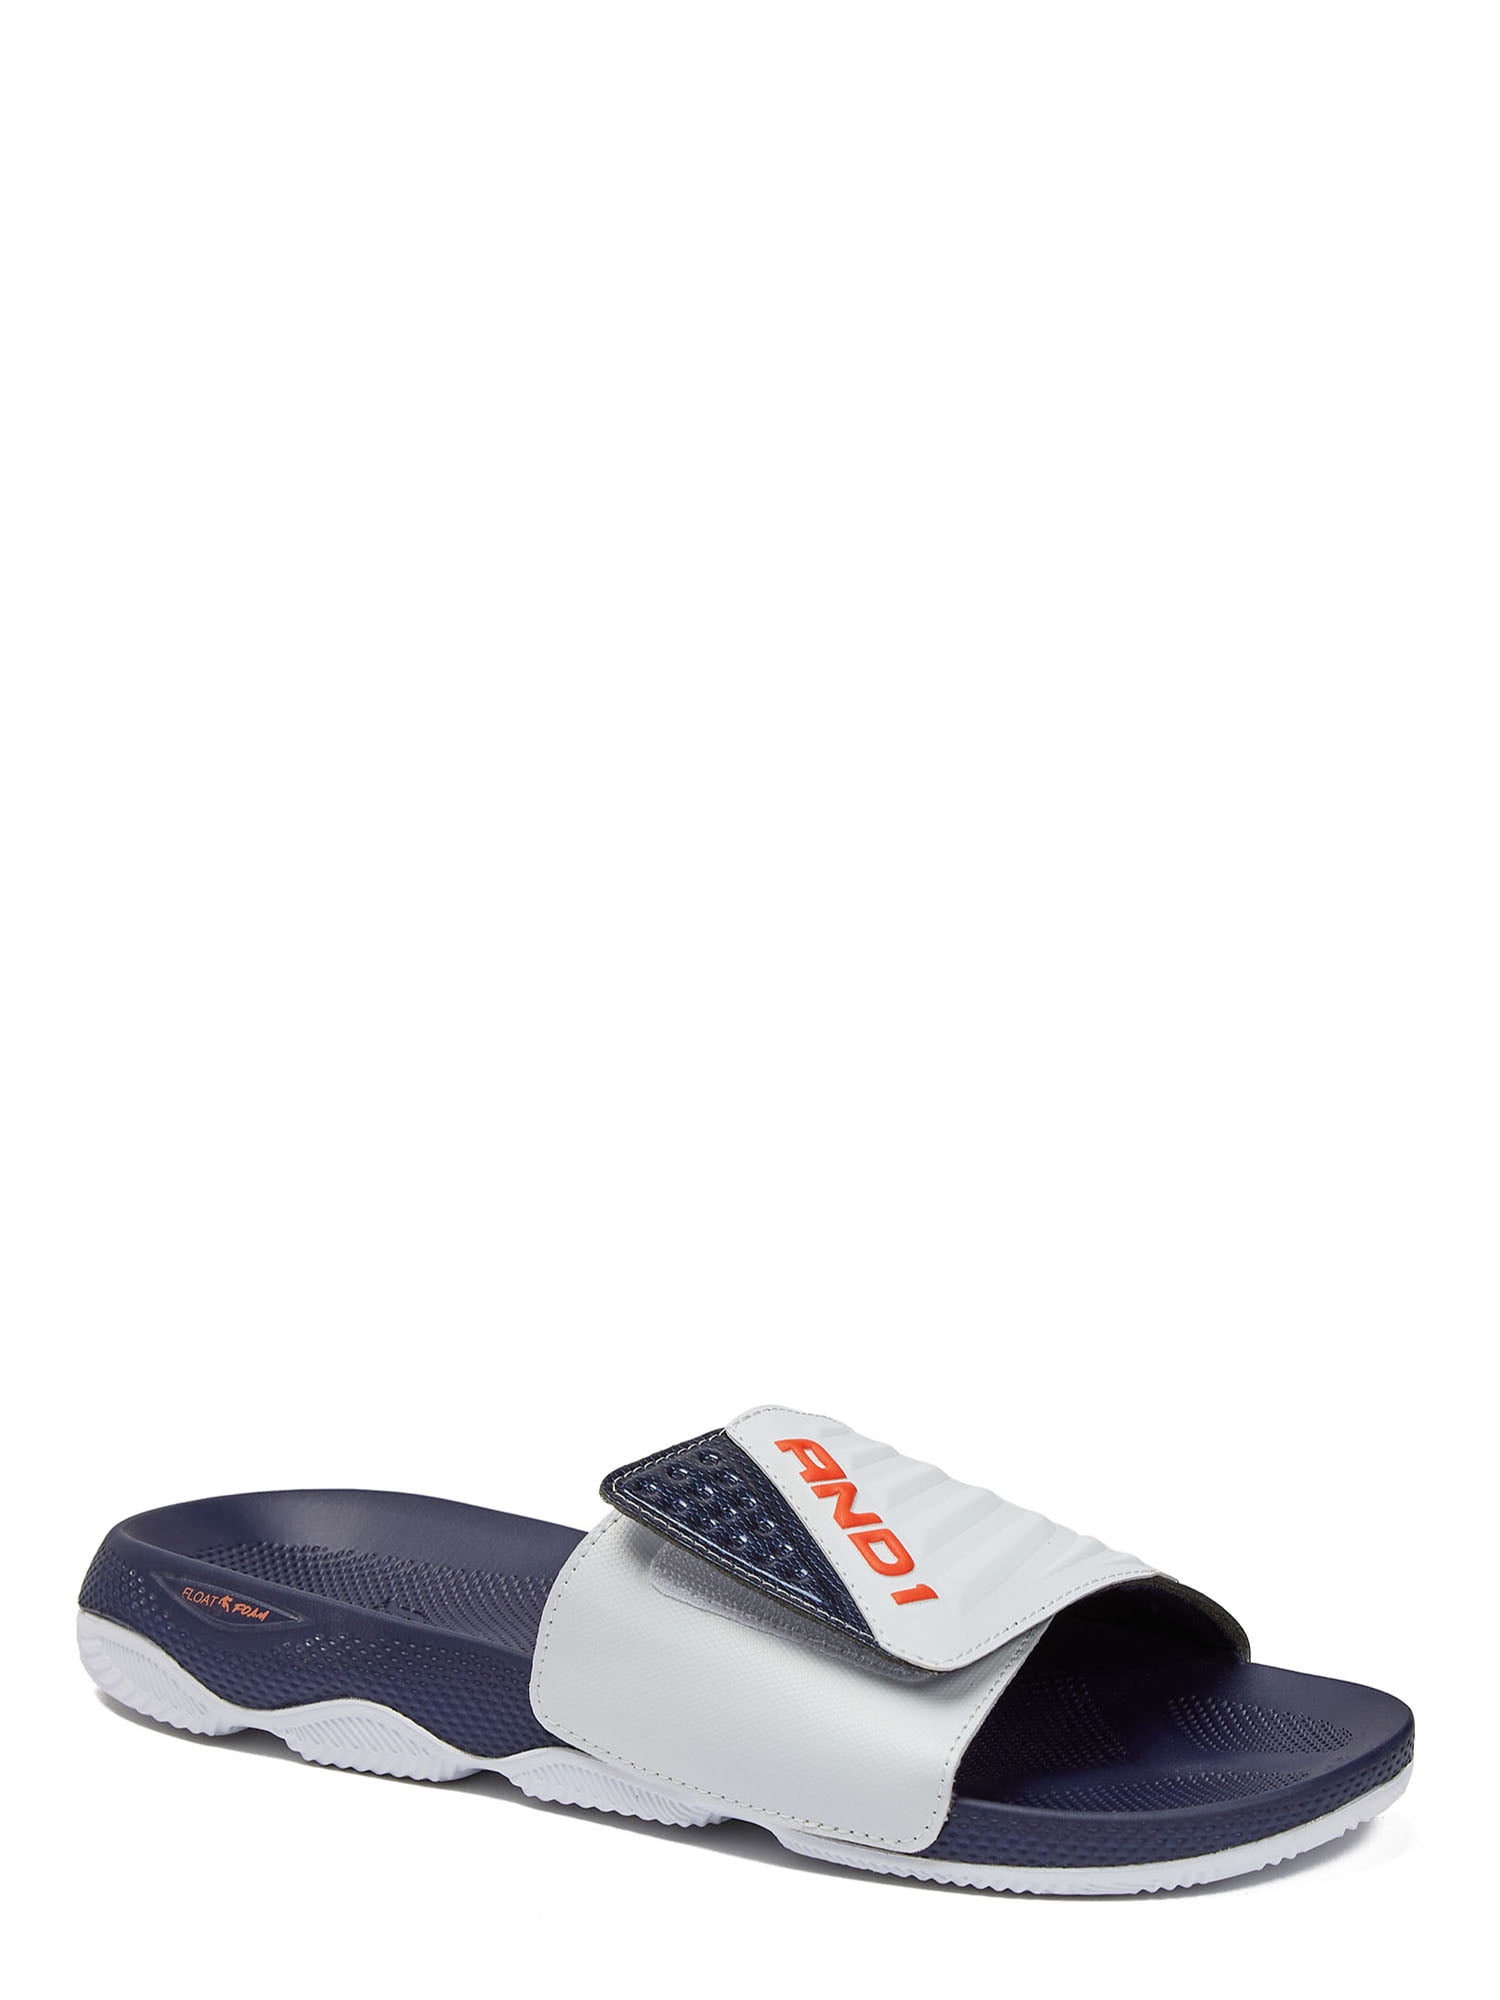 AND1 Men's Swish 2.0 Adjustable Strap Slide Sandal